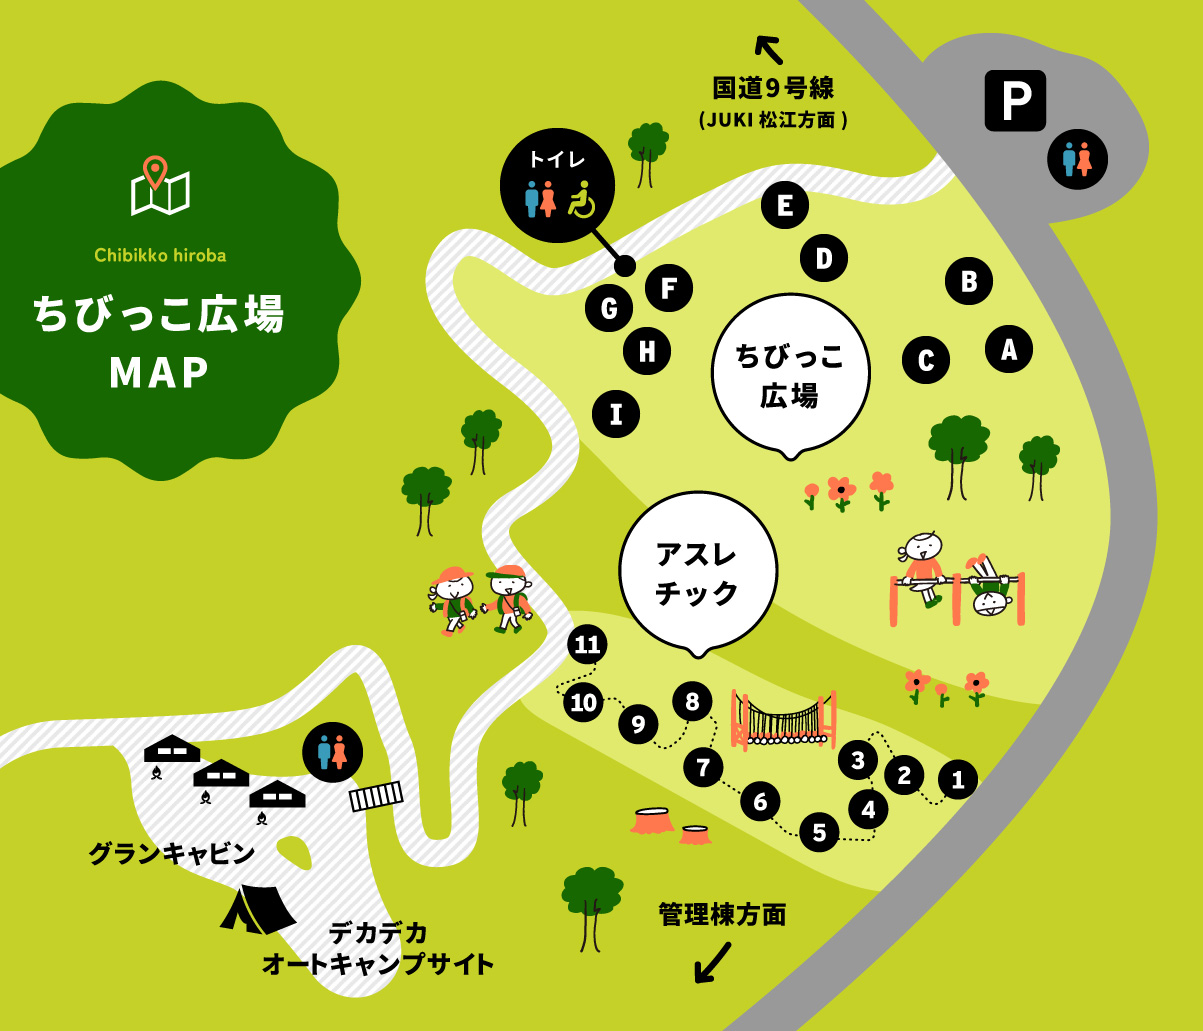 ちびっこ広場MAP